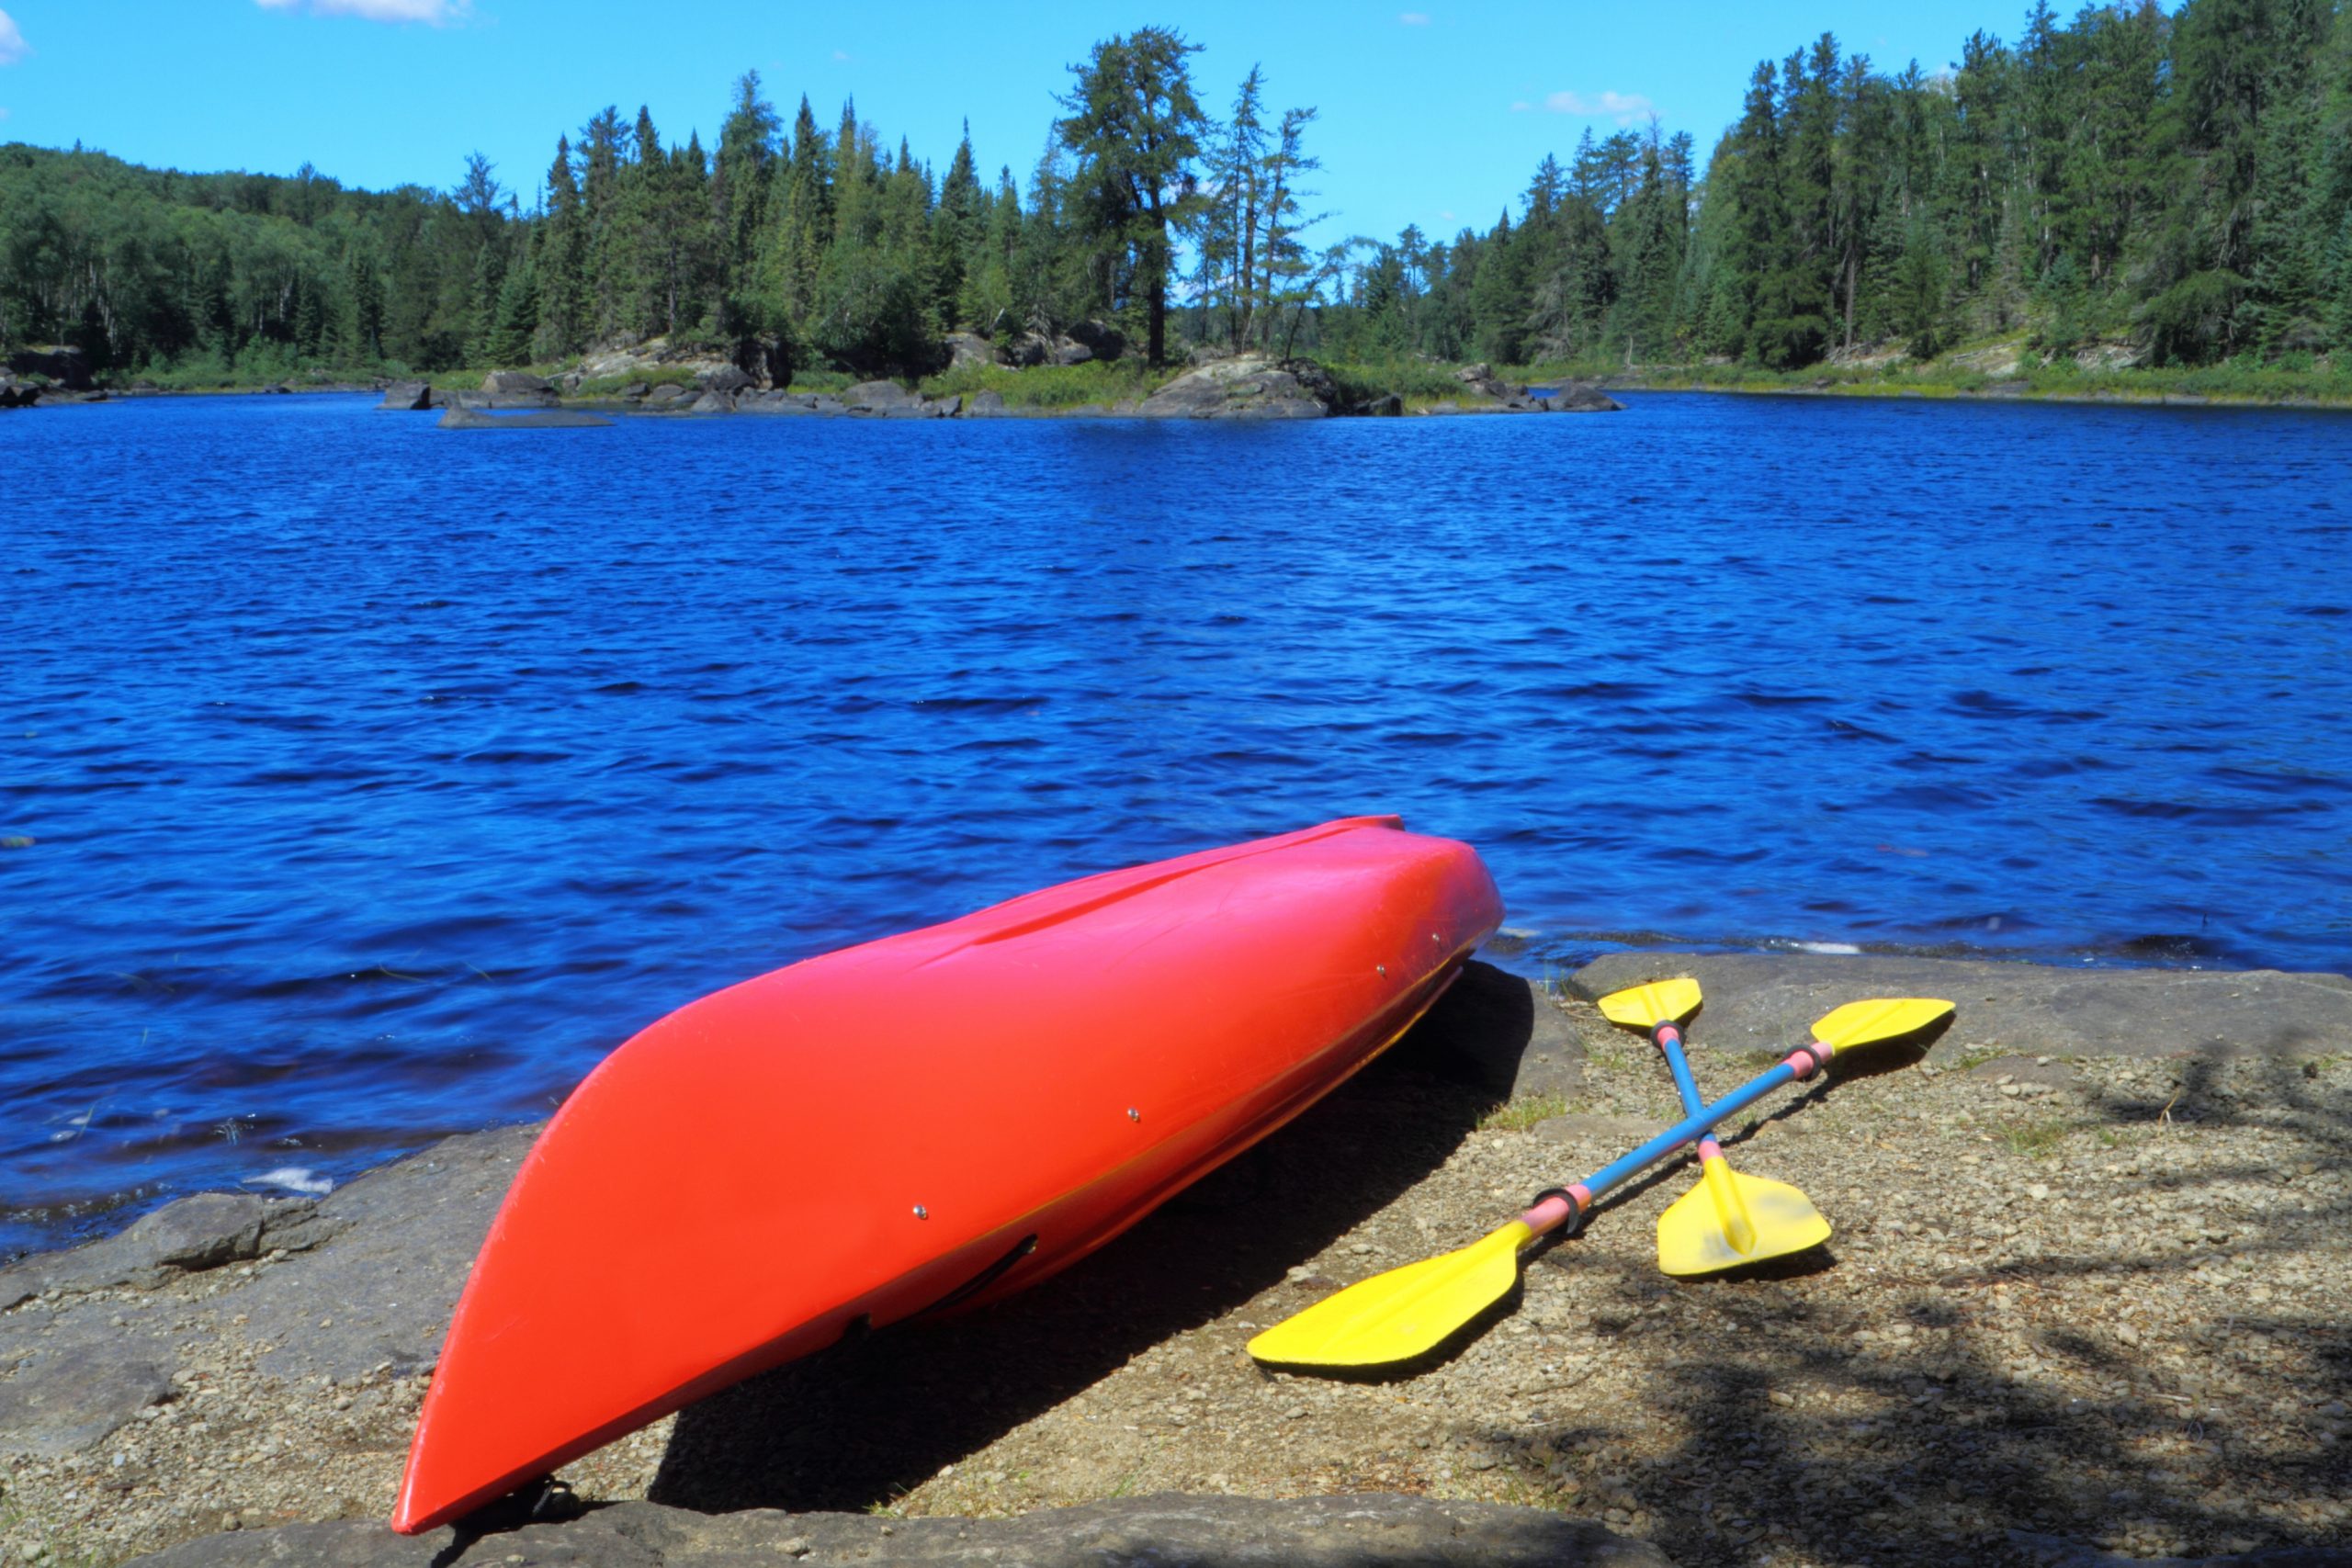 fishing planet alberta canada price of kayak rental